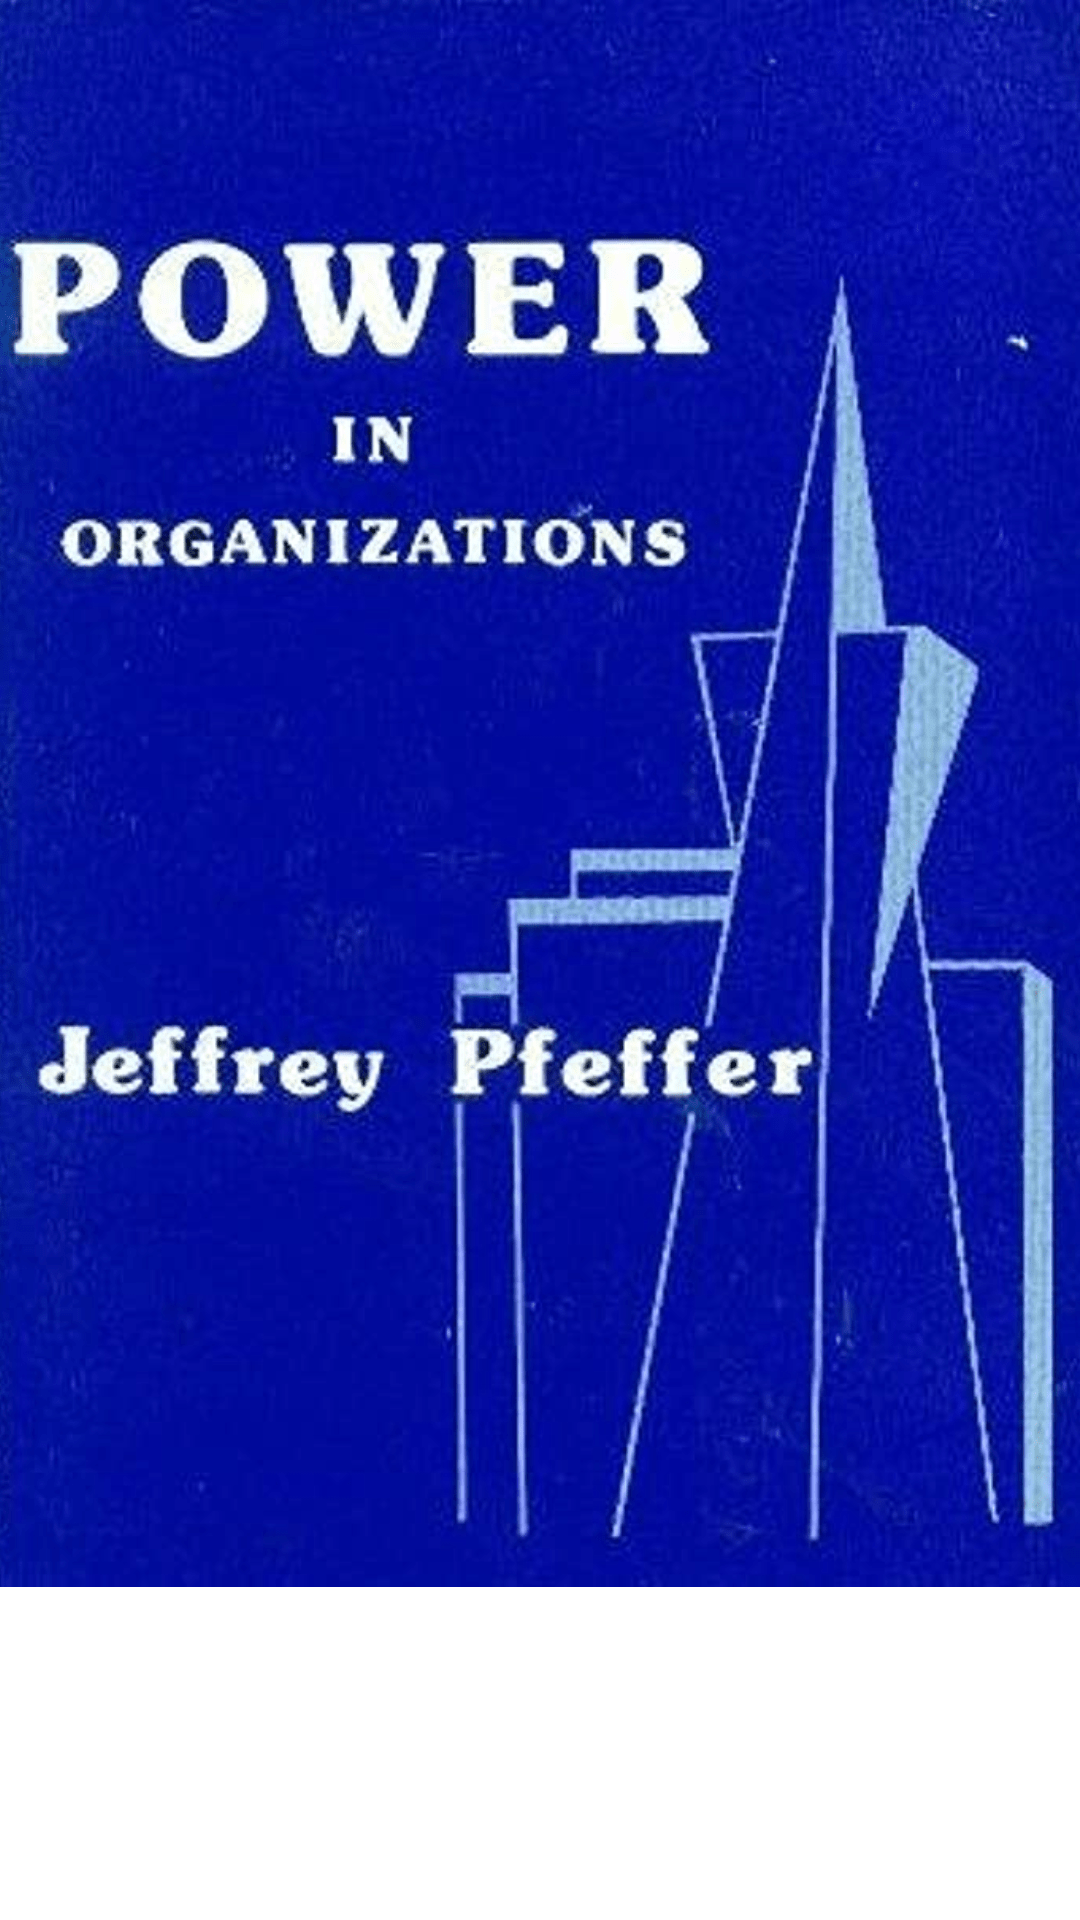 Power in Organizations by Jeffrey Pfeffer